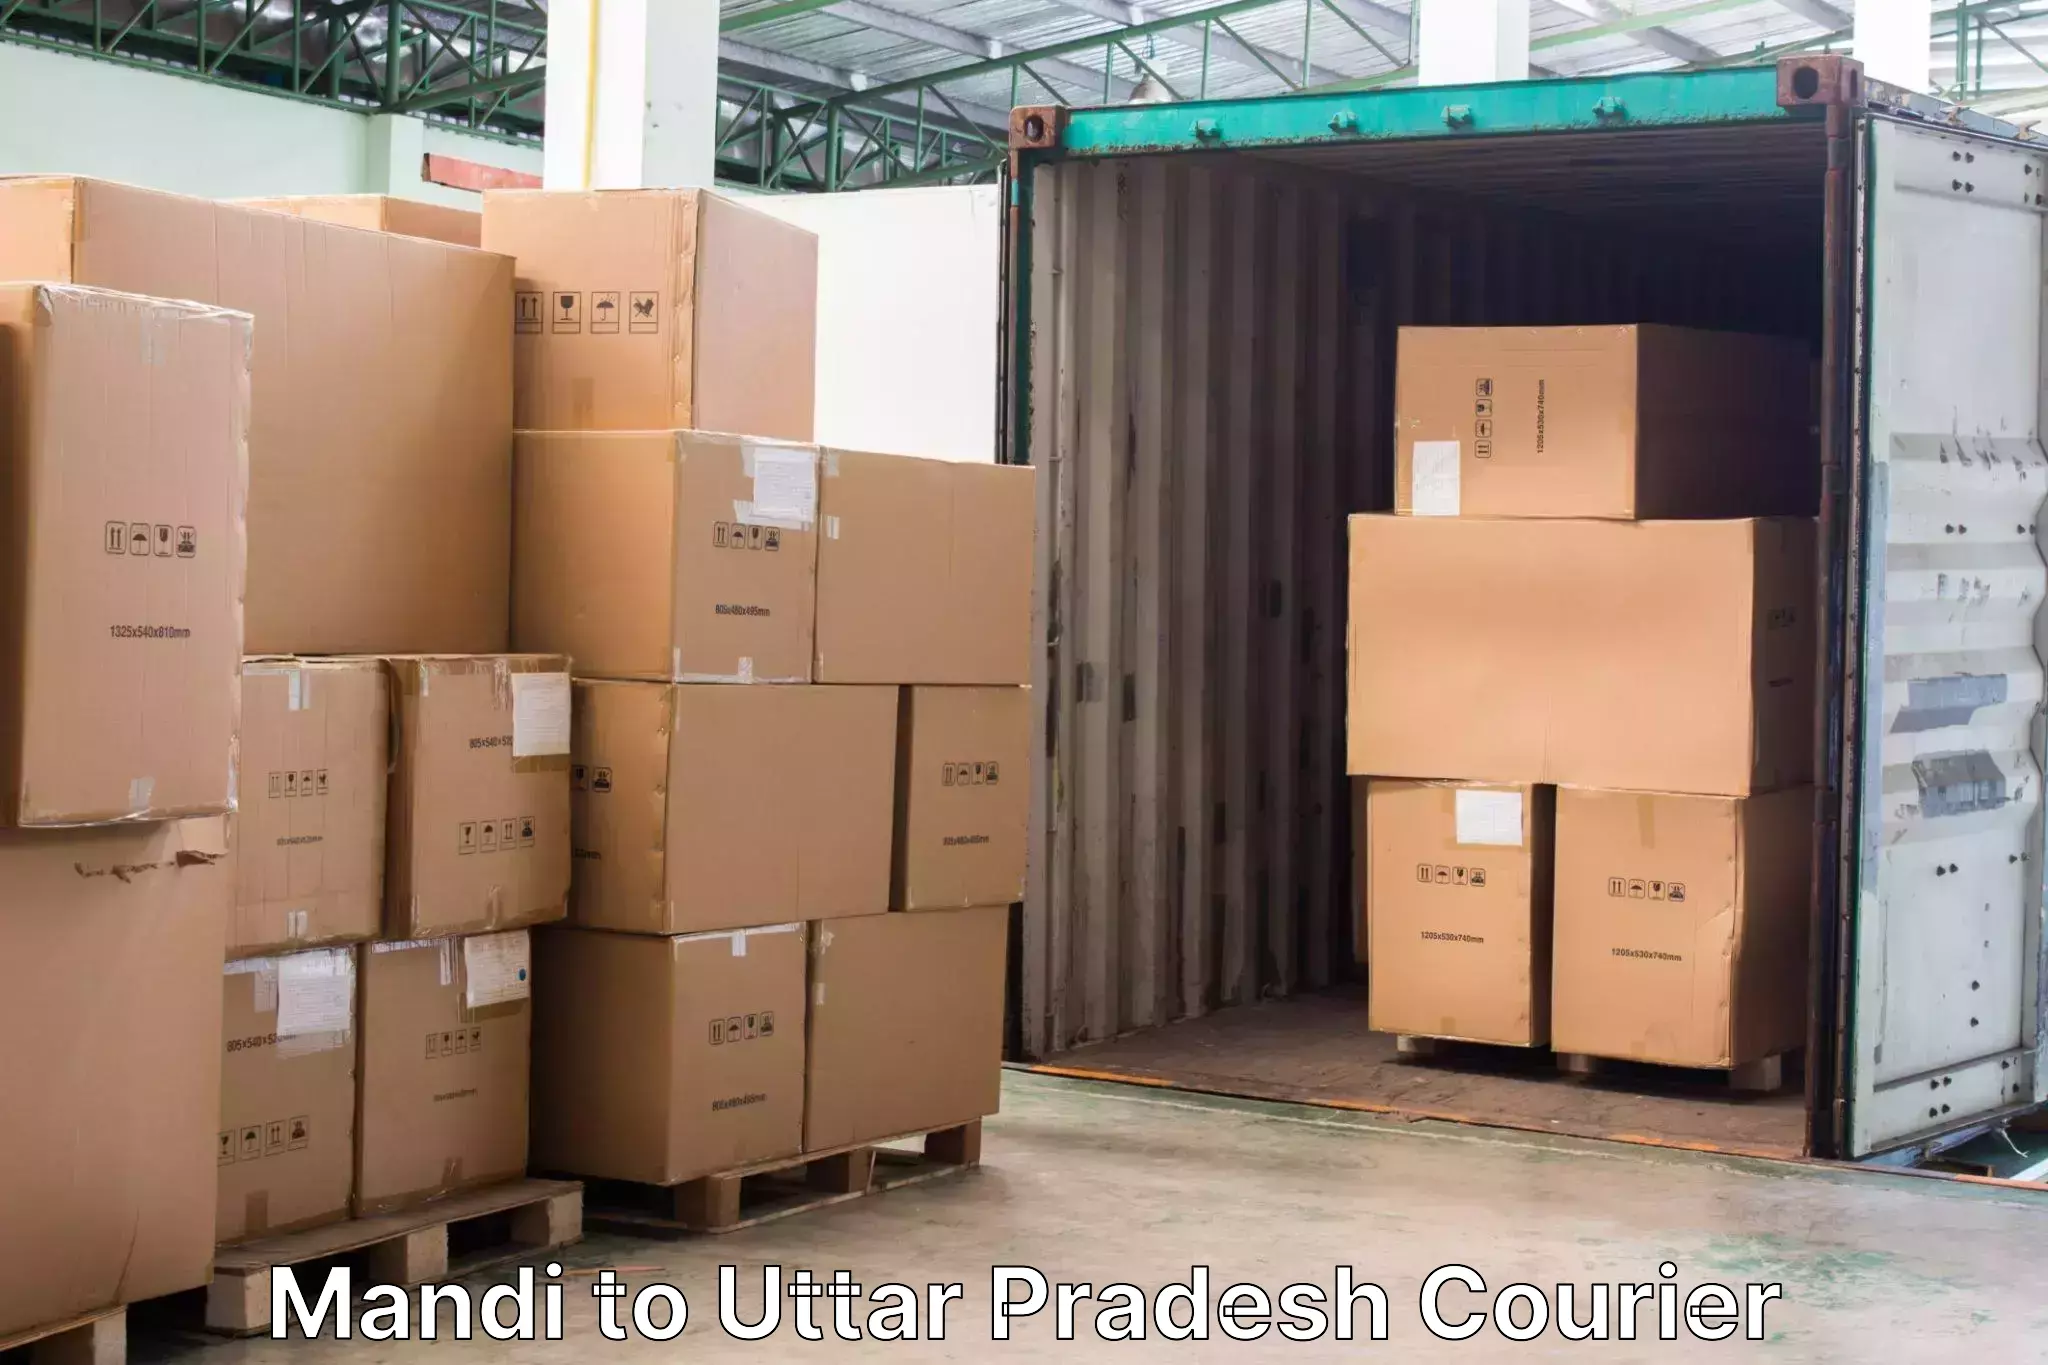 Baggage transport technology Mandi to Jalesar